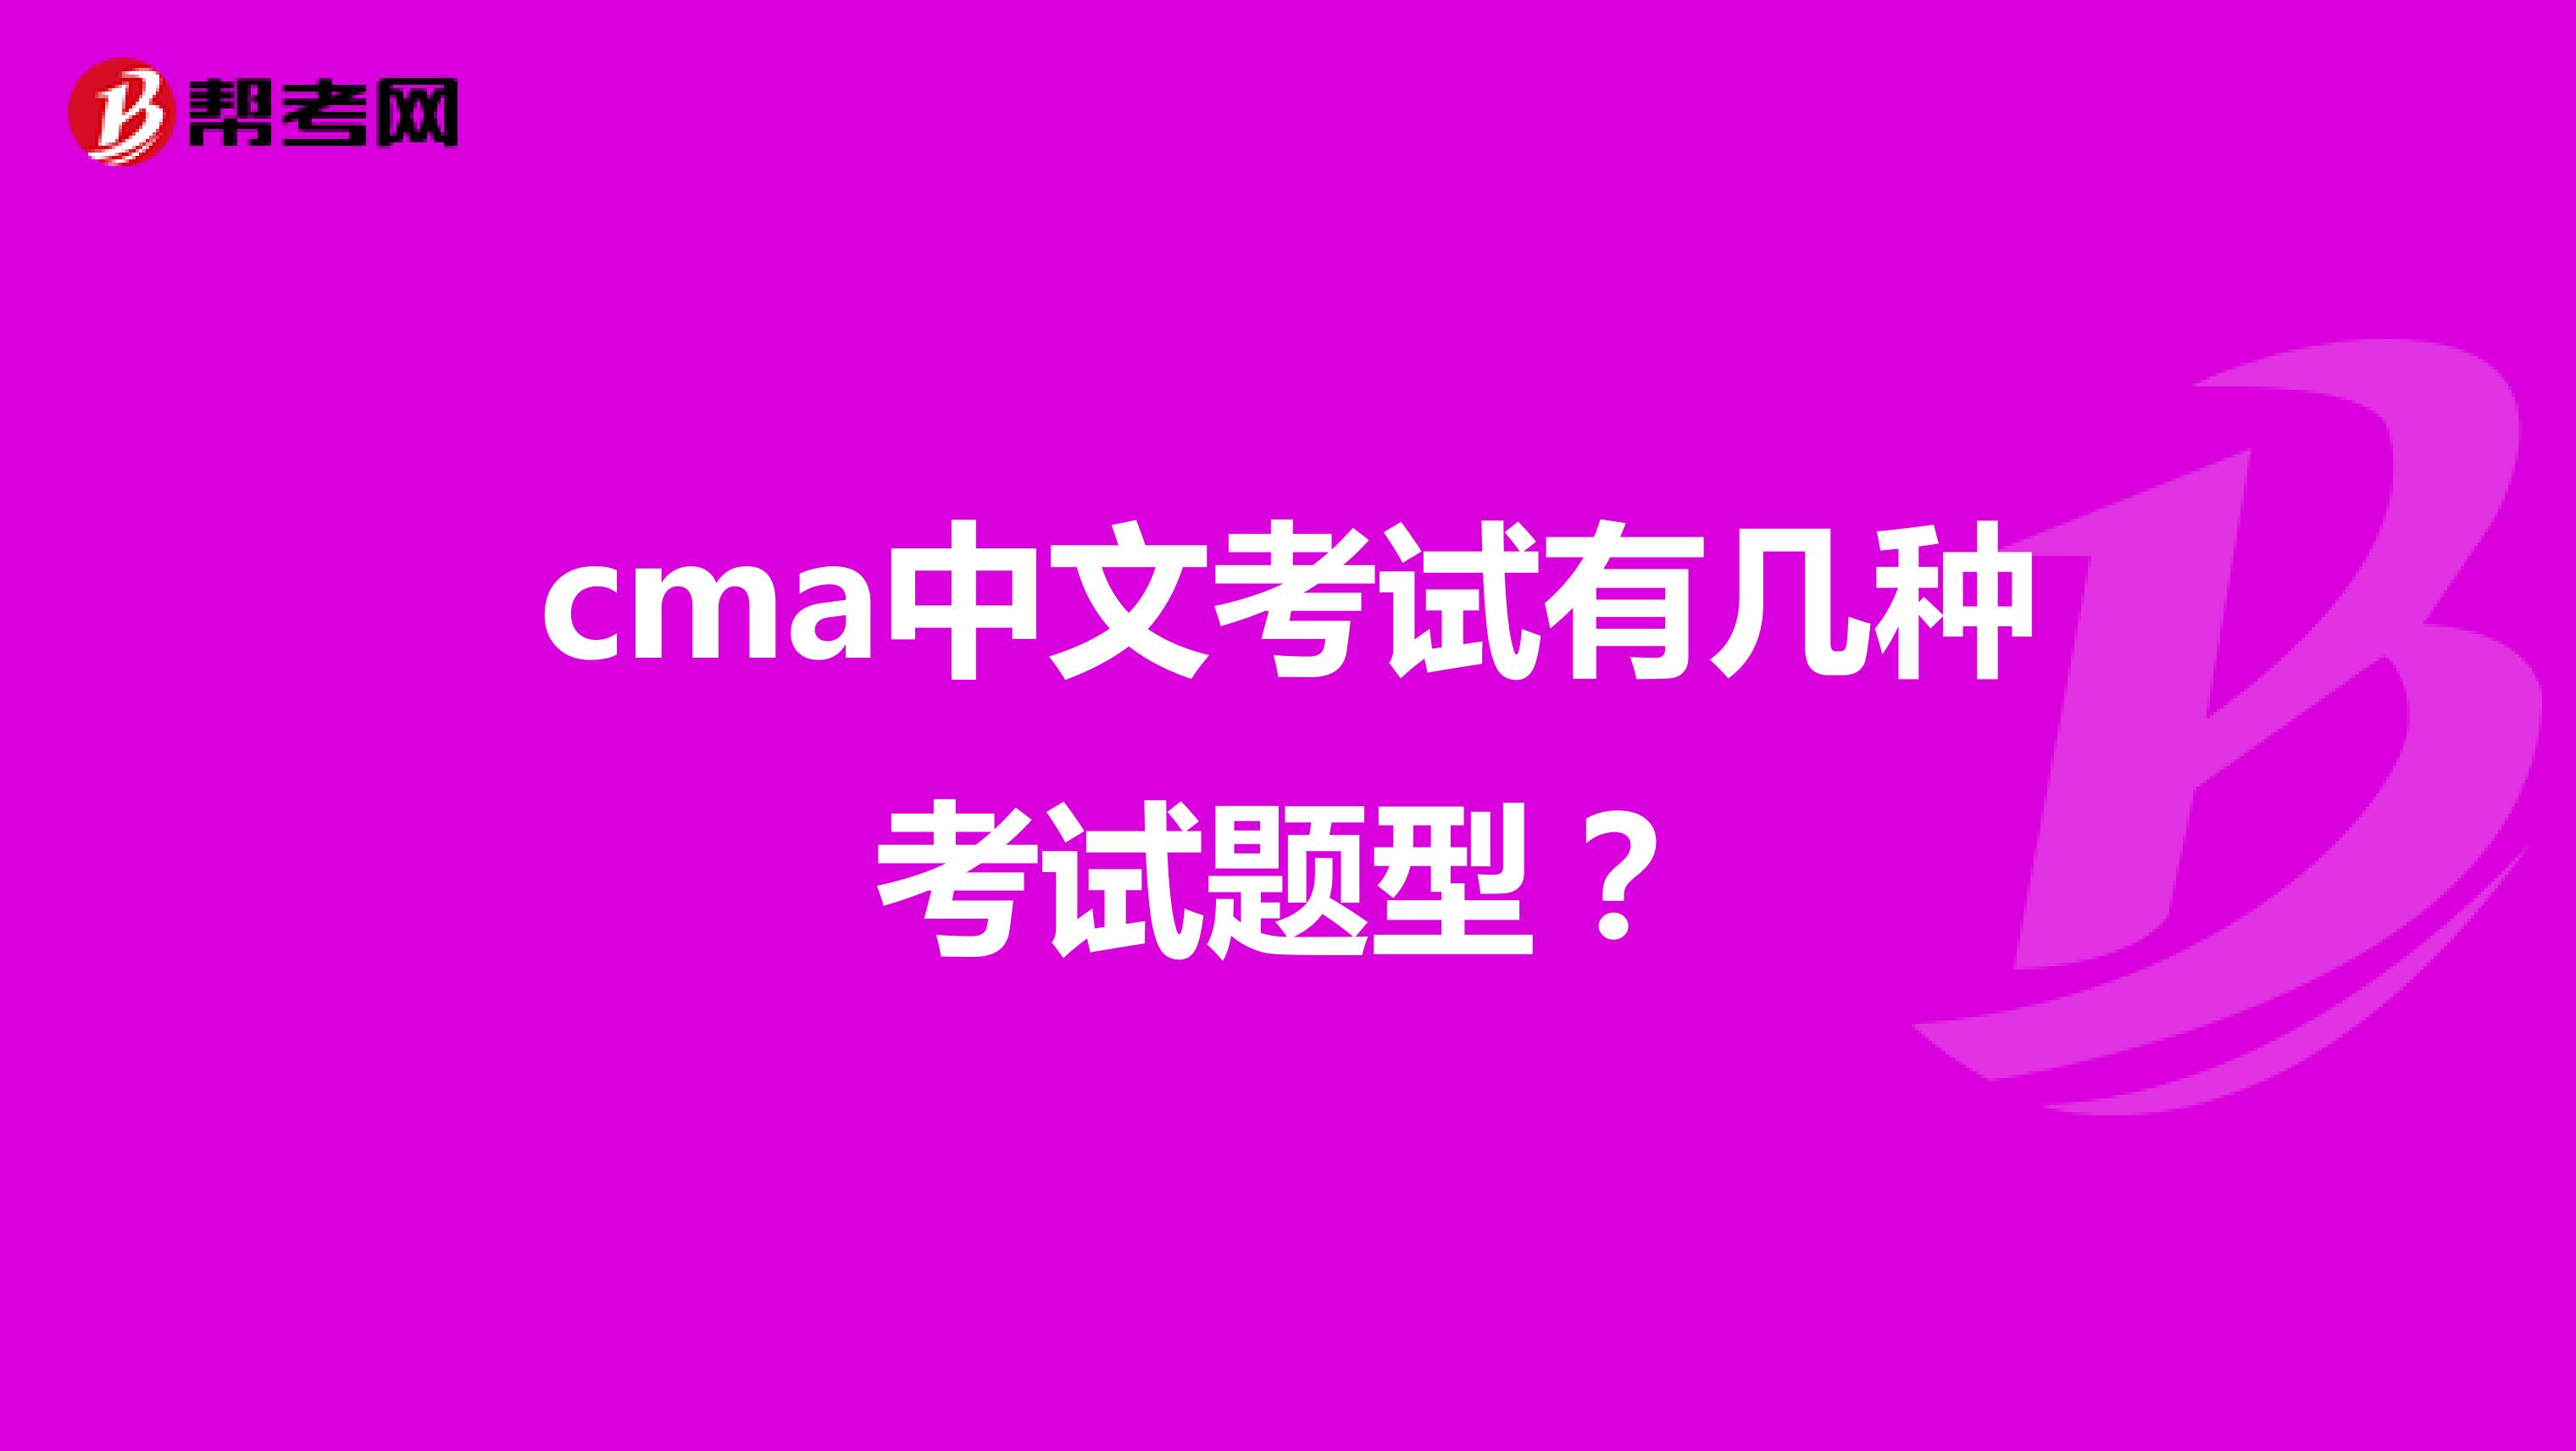 cma中文考试有几种考试题型？